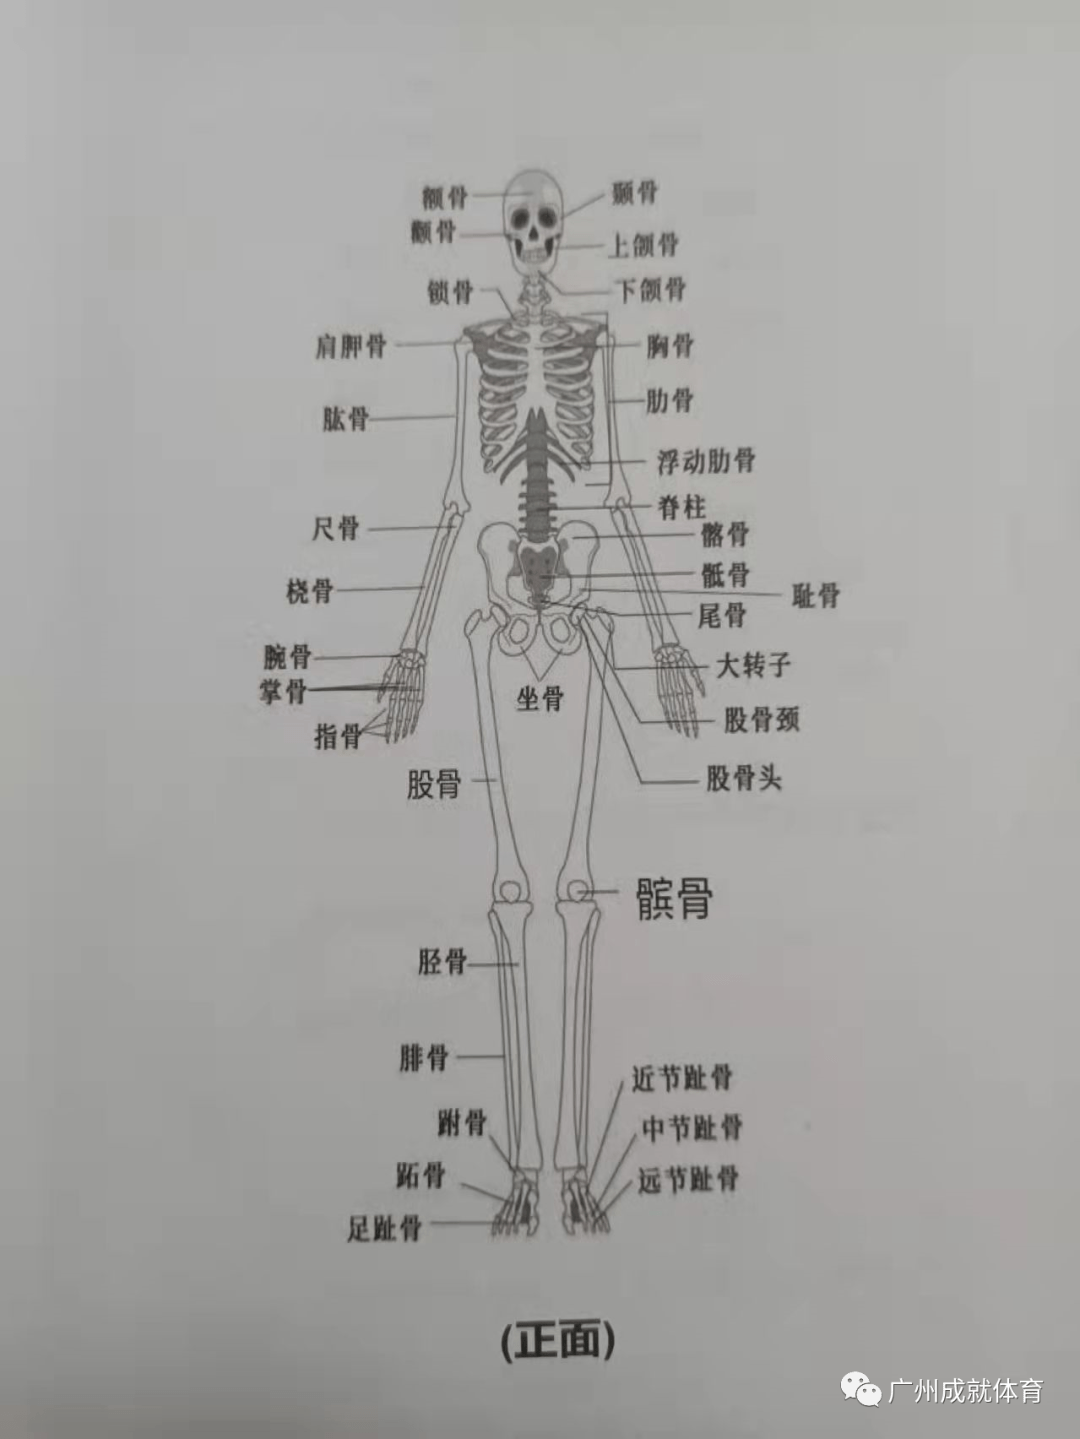 人体共有206块骨骼,组成了人体这幅框架,再加上内脏肌肉各类细胞等等